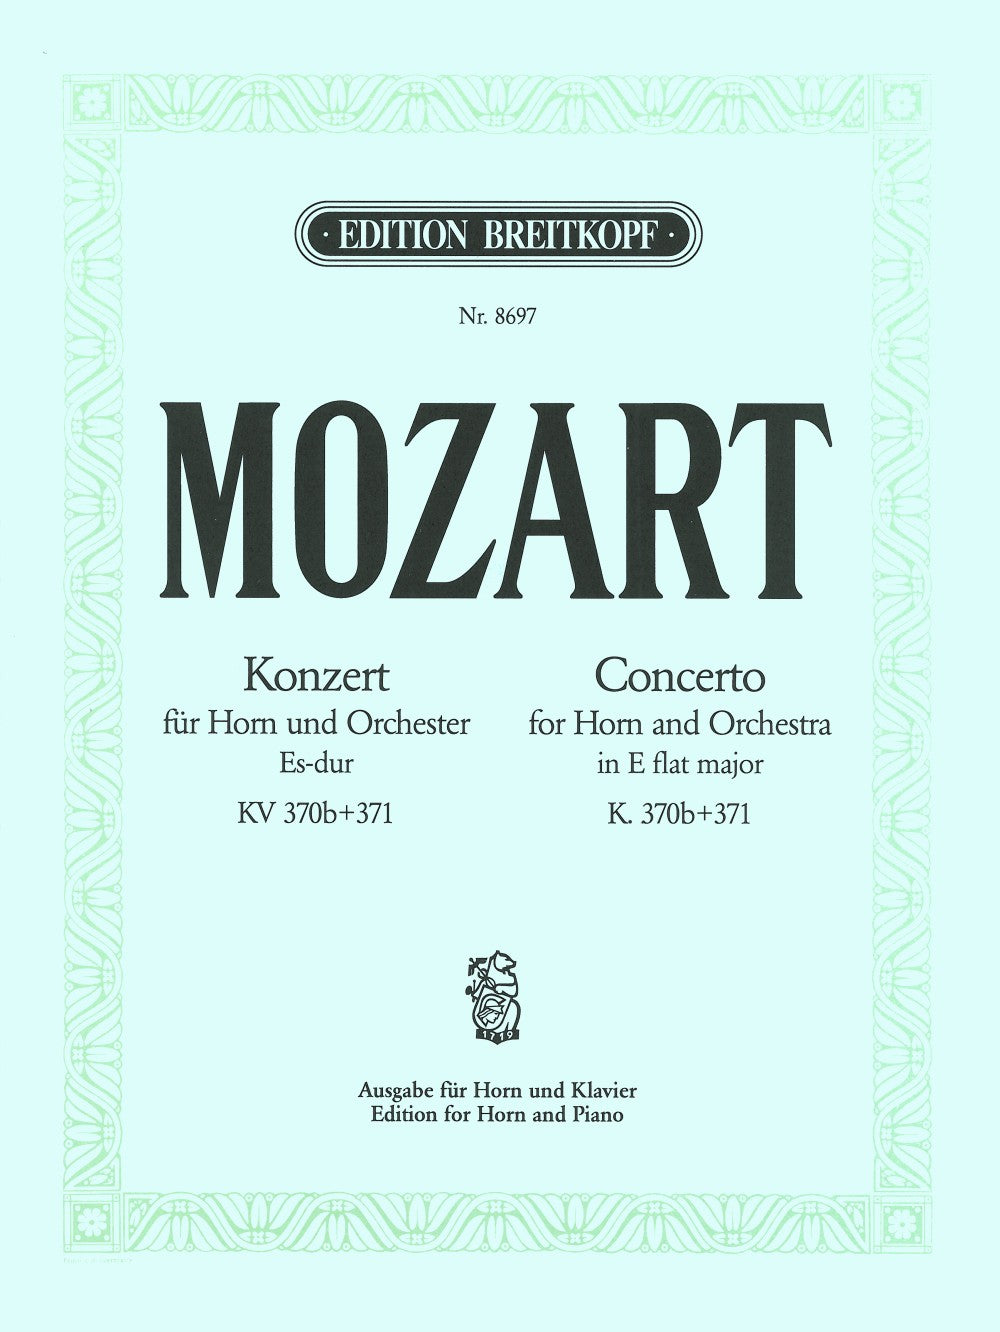 Mozart Horn Concerto in Eb major K. 370b + K. 371